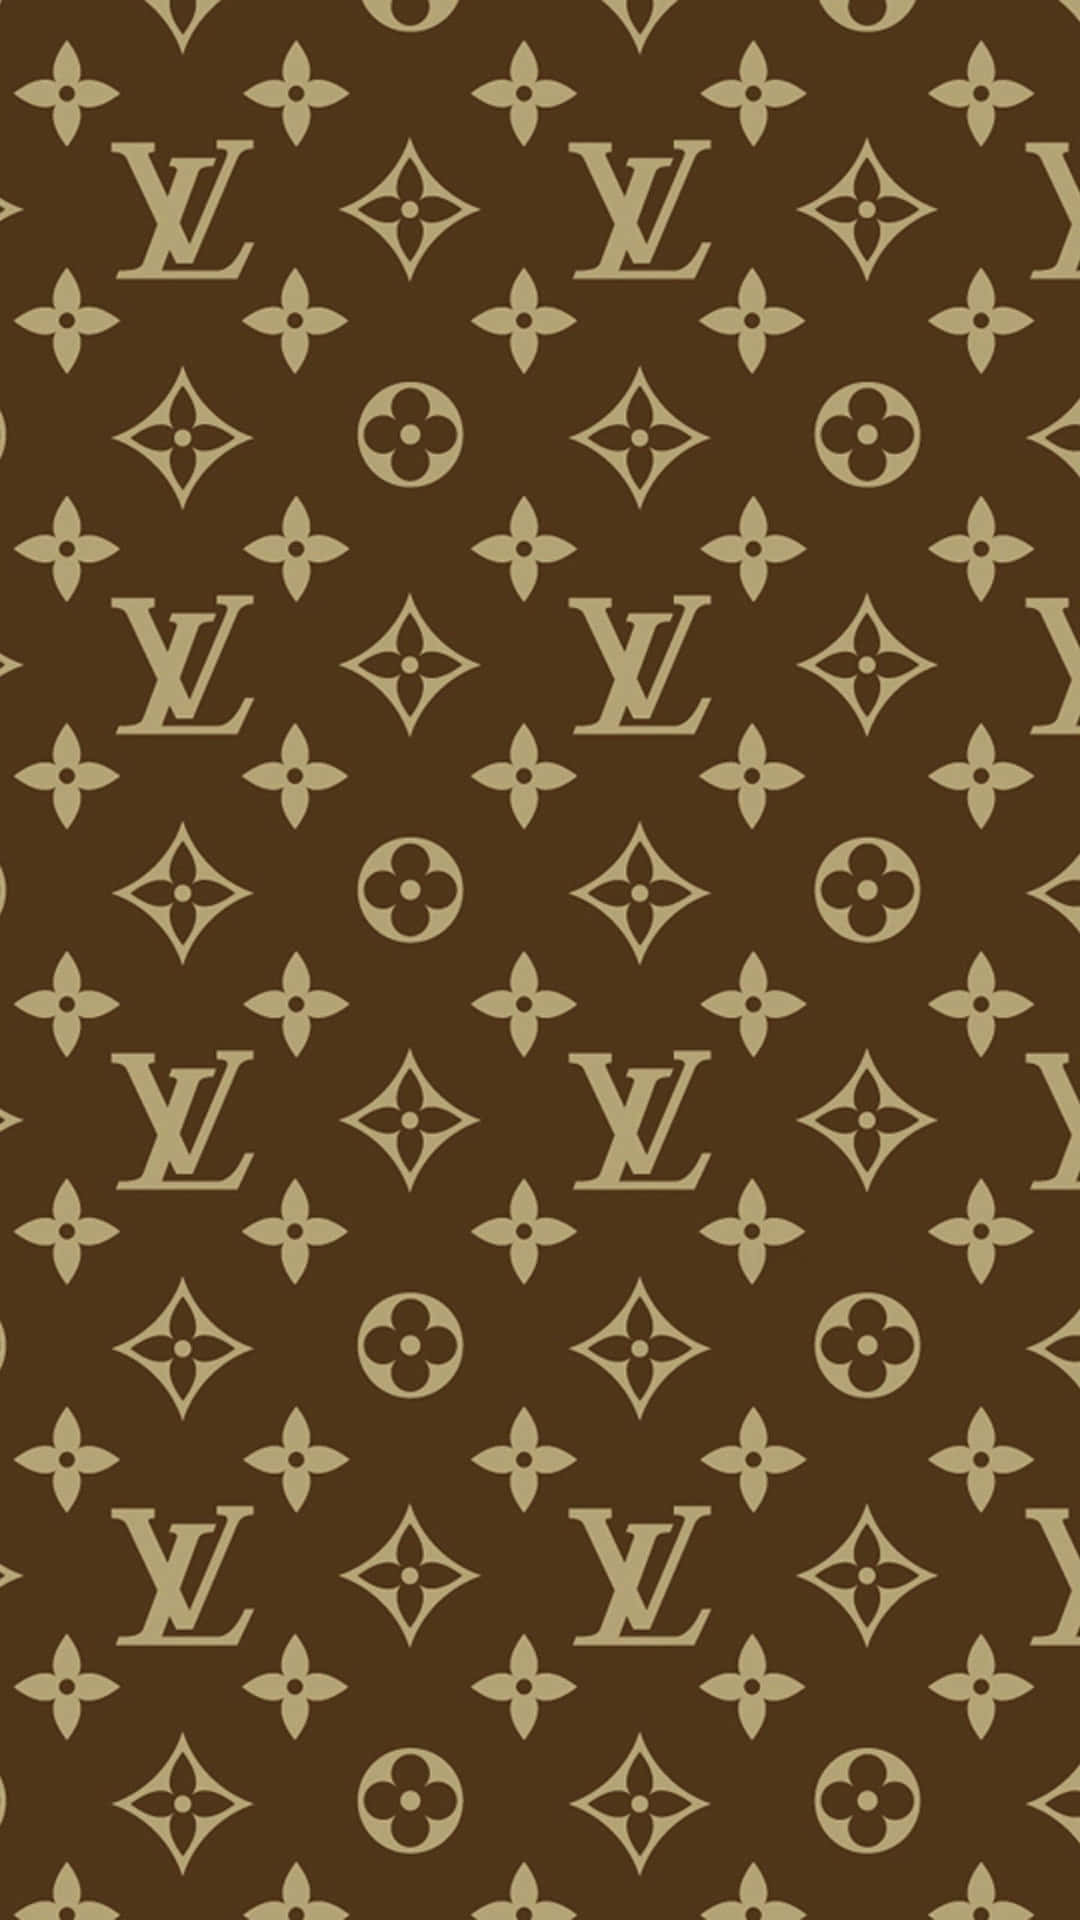 Et Louis Vuitton Monogram mønster i brunt og beige Wallpaper